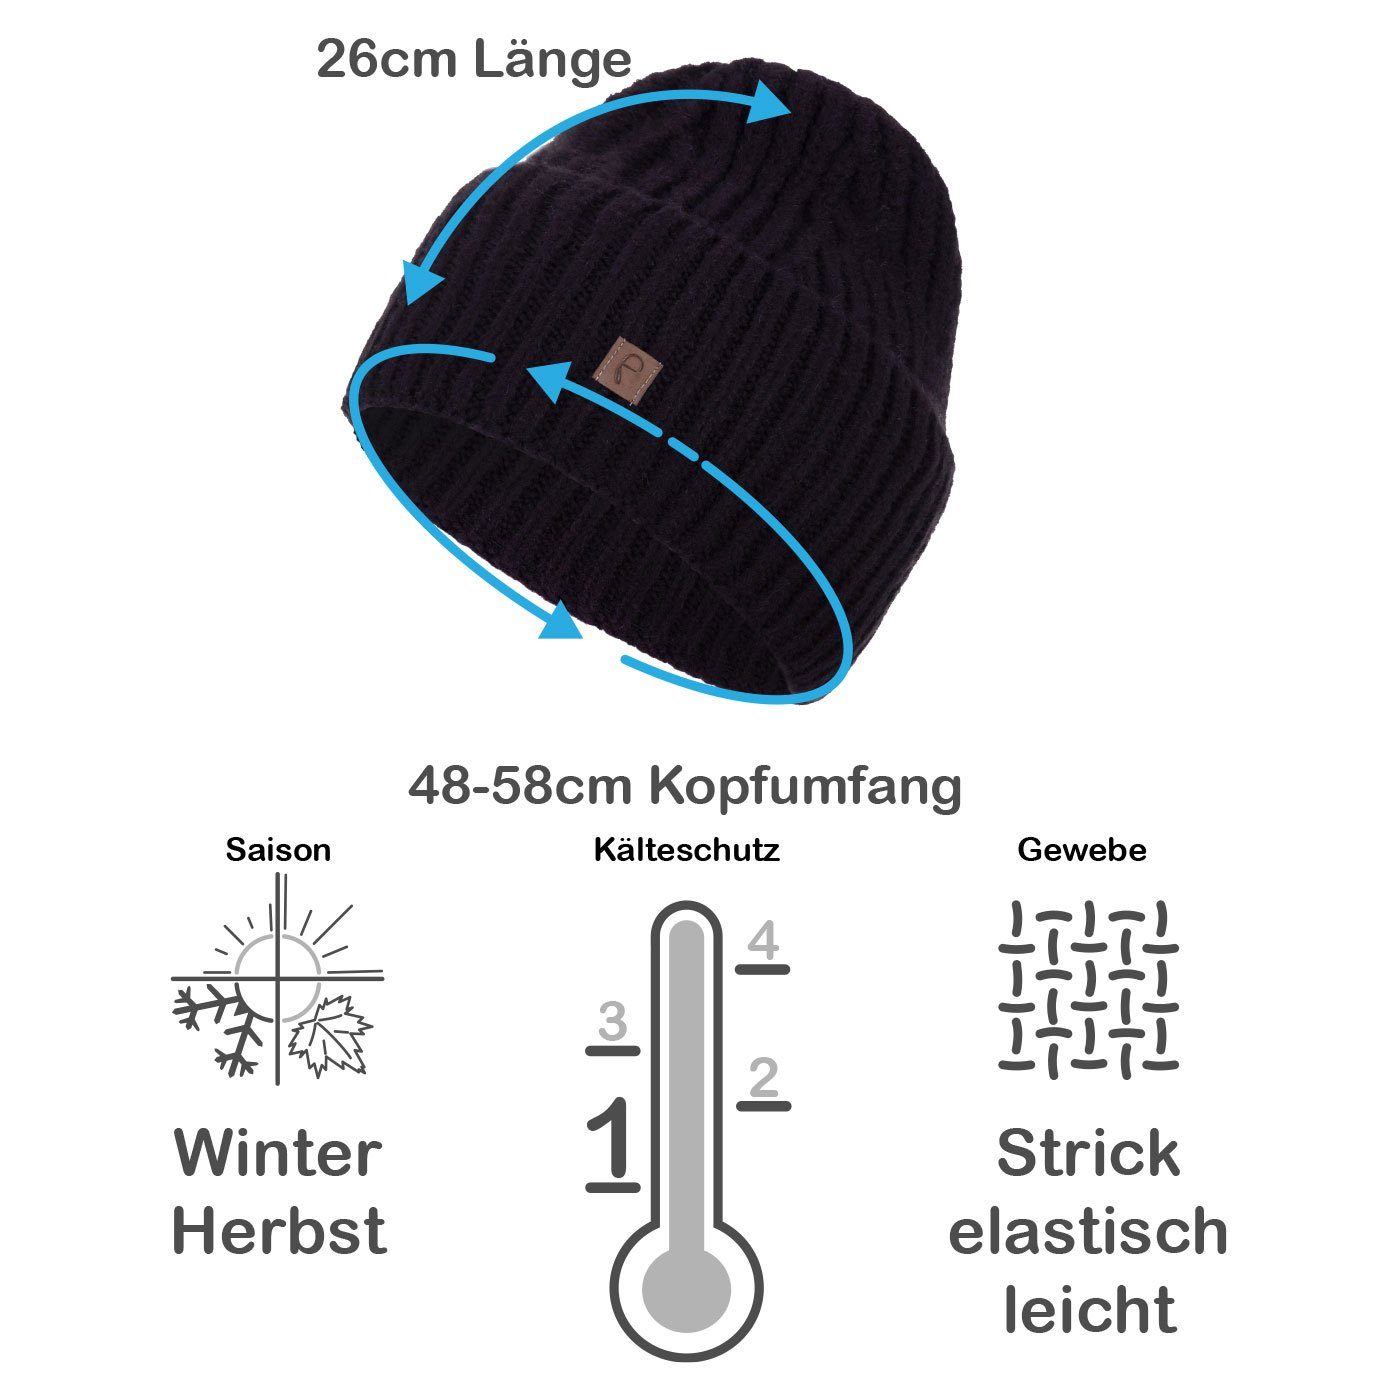 Winter breiter Strickmütze Faera Damen Wintermütze Mütze Grobstrick Aufschlag (1-St) schwarz Beanie